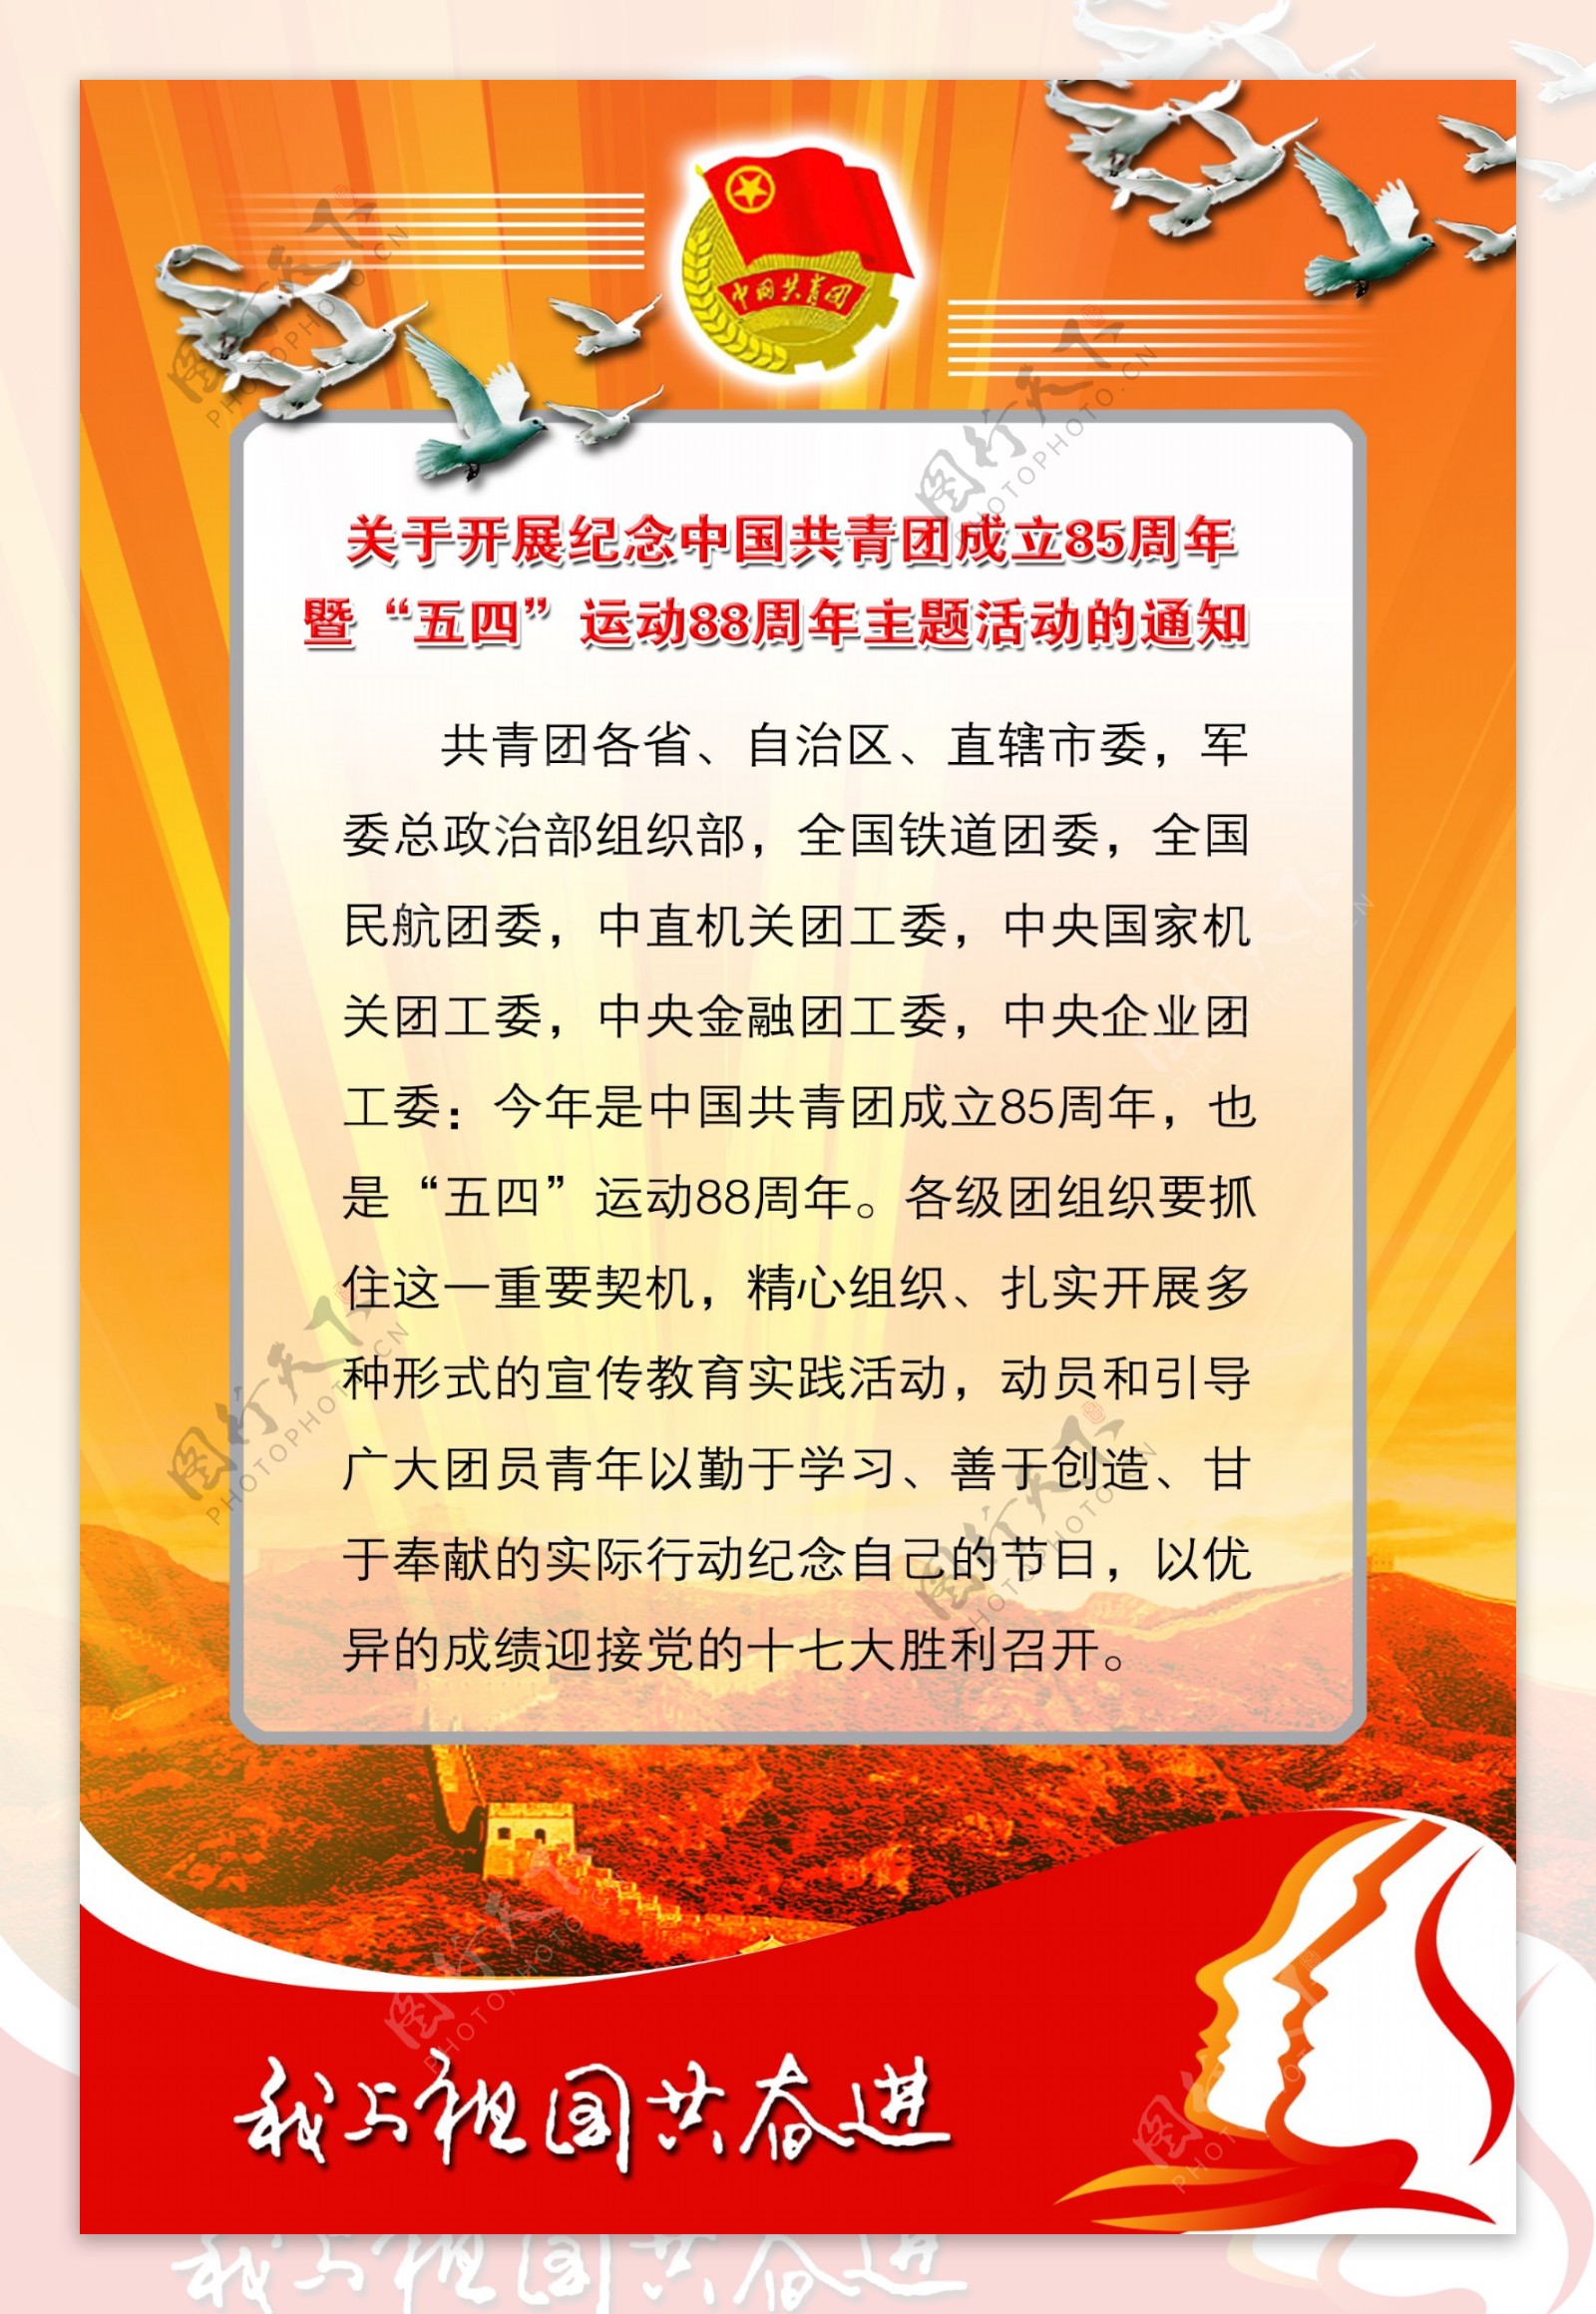 关于开展纪念中国共青团成立85